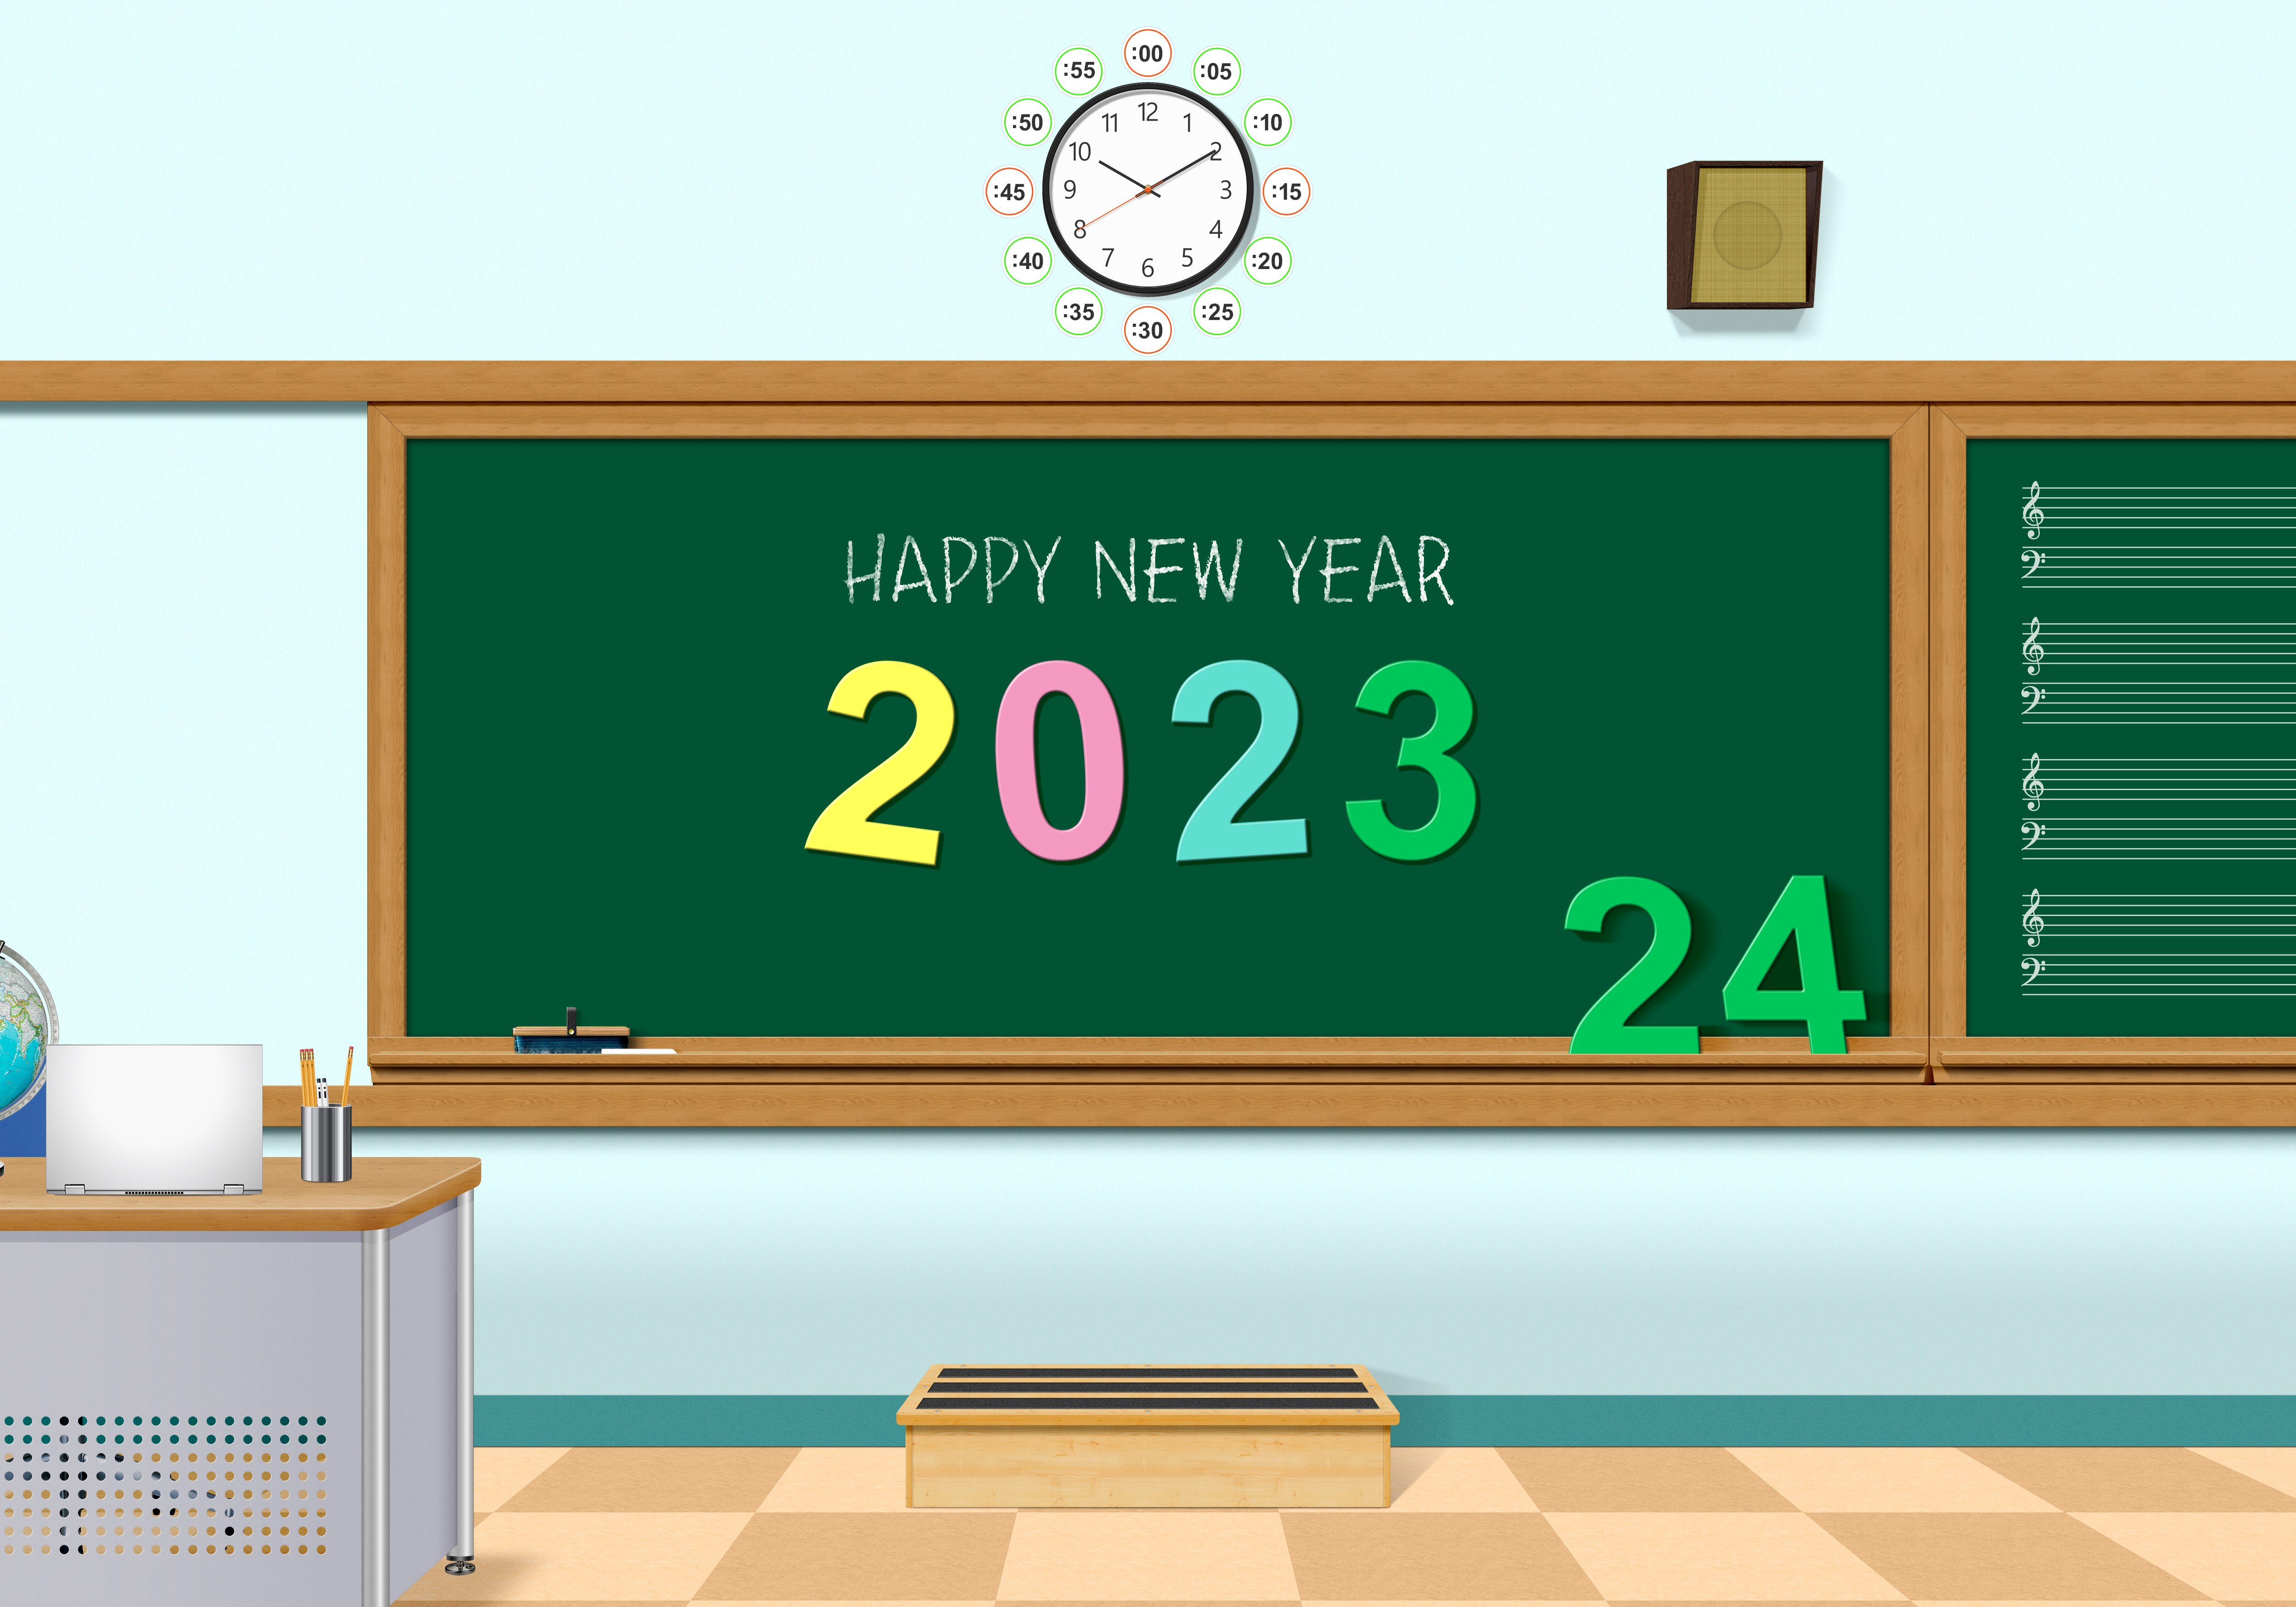 General 5000x3500 classroom school New Year 2023 (year) digital art